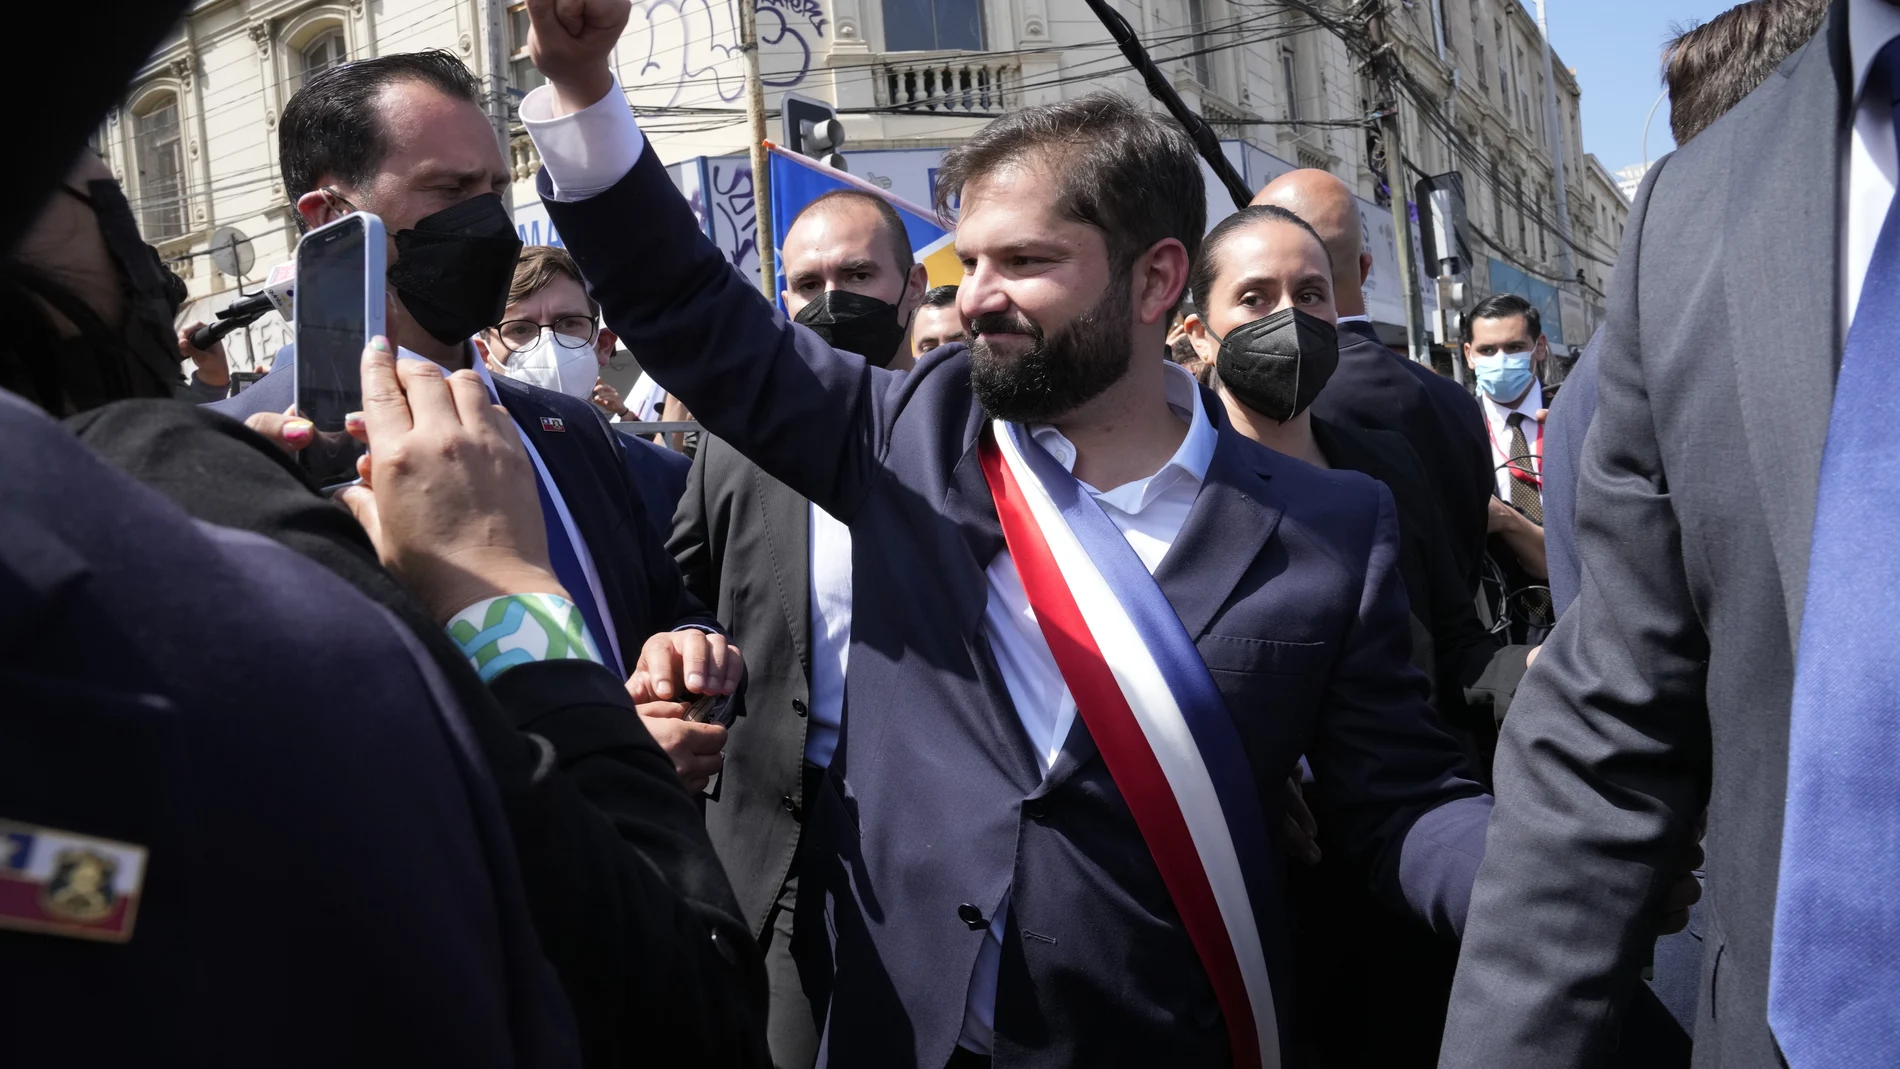 El presidente saliente, Sebastián Piñera, ha hecho entrega a Boric de la piocha de O'Higgins, considerada símbolo del poder presidencial en el país latinoamericano.